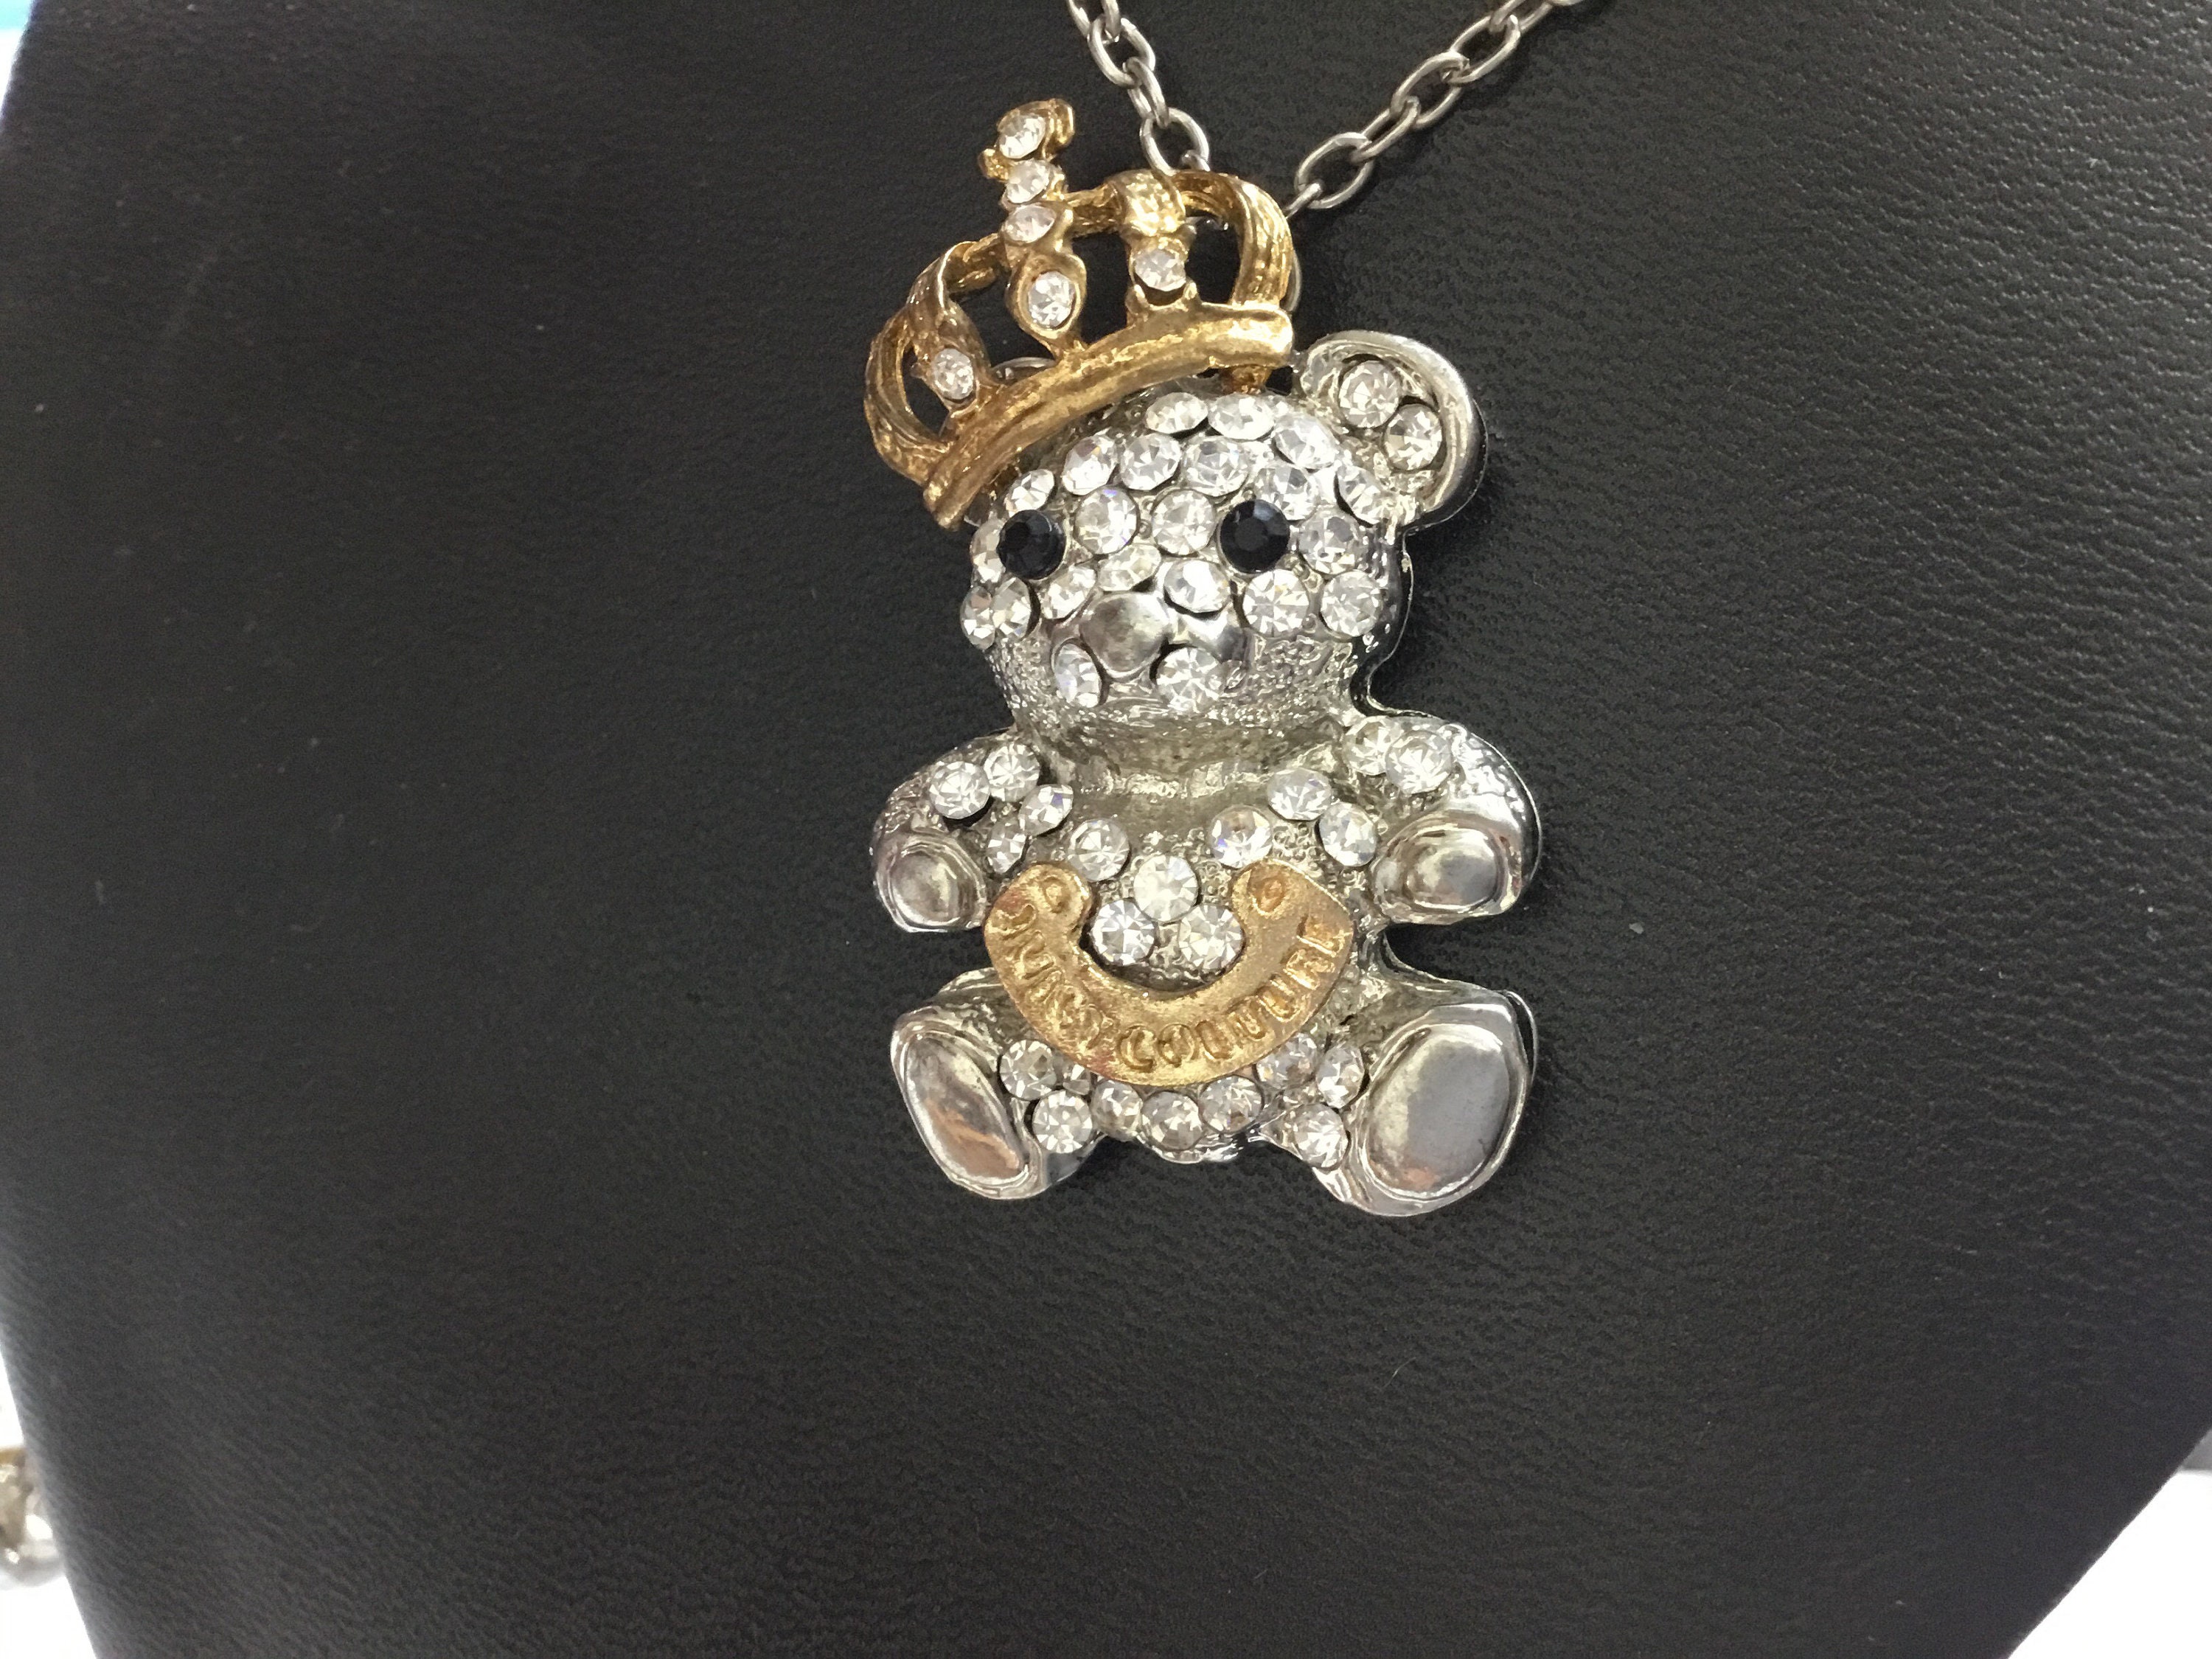 JUICY COUTURE J necklace crown crest pendant charm fashion jewlery vintage